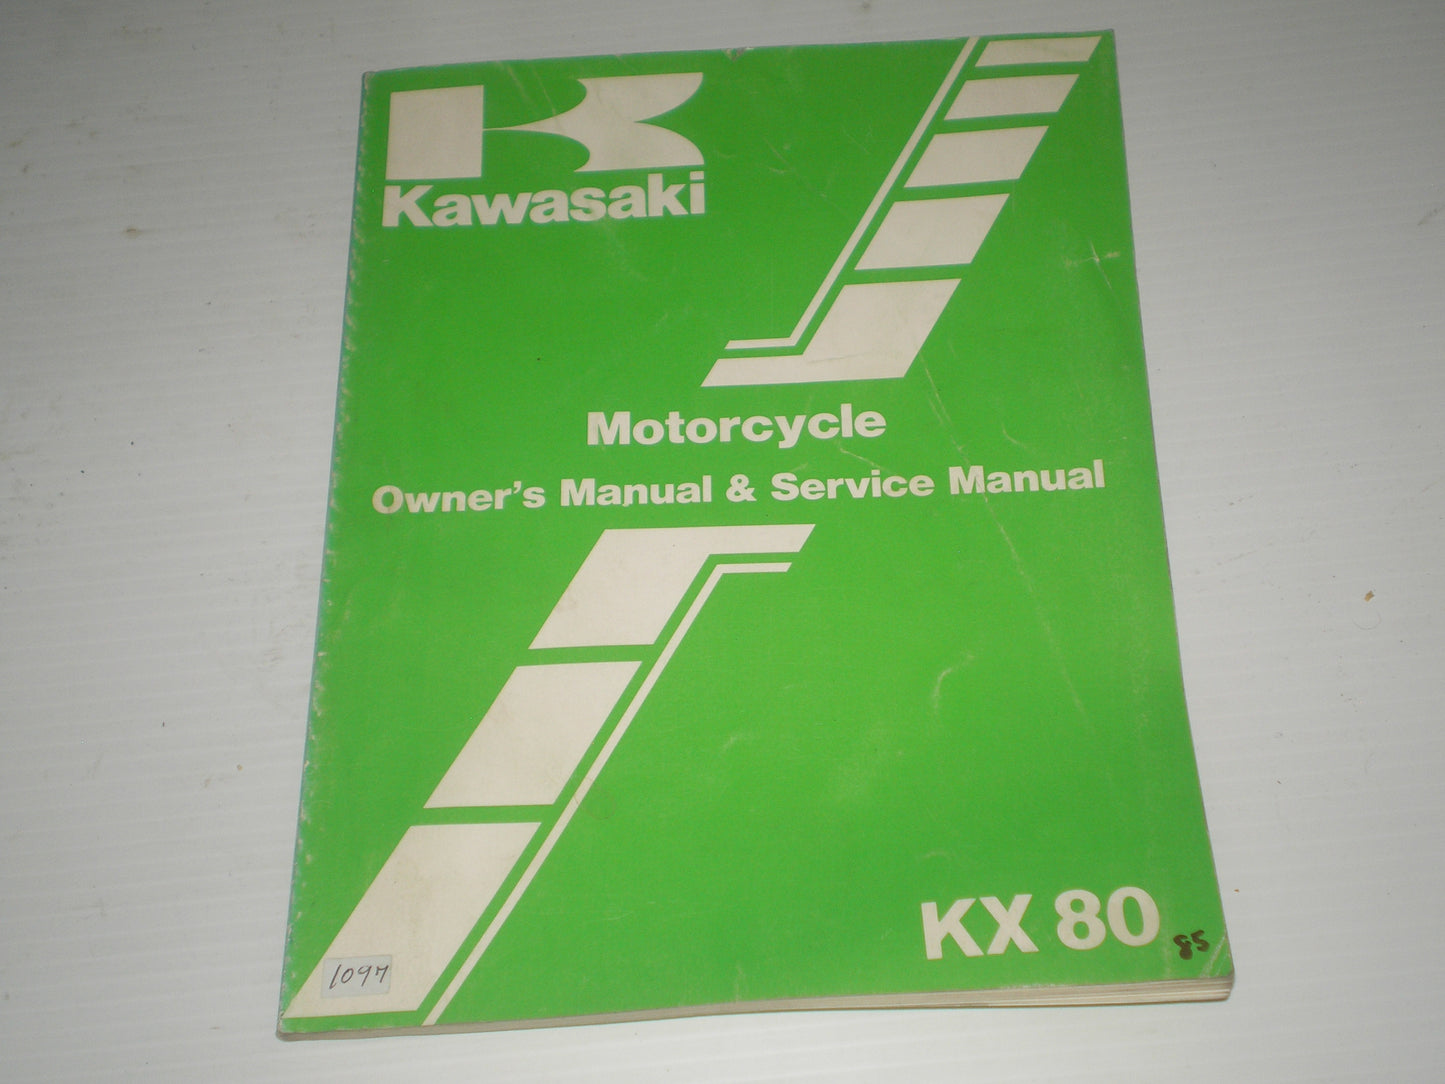 KAWASAKI KX80 G1 H1 1986  Owner's & Service Manual  99920-1326-04  #1097